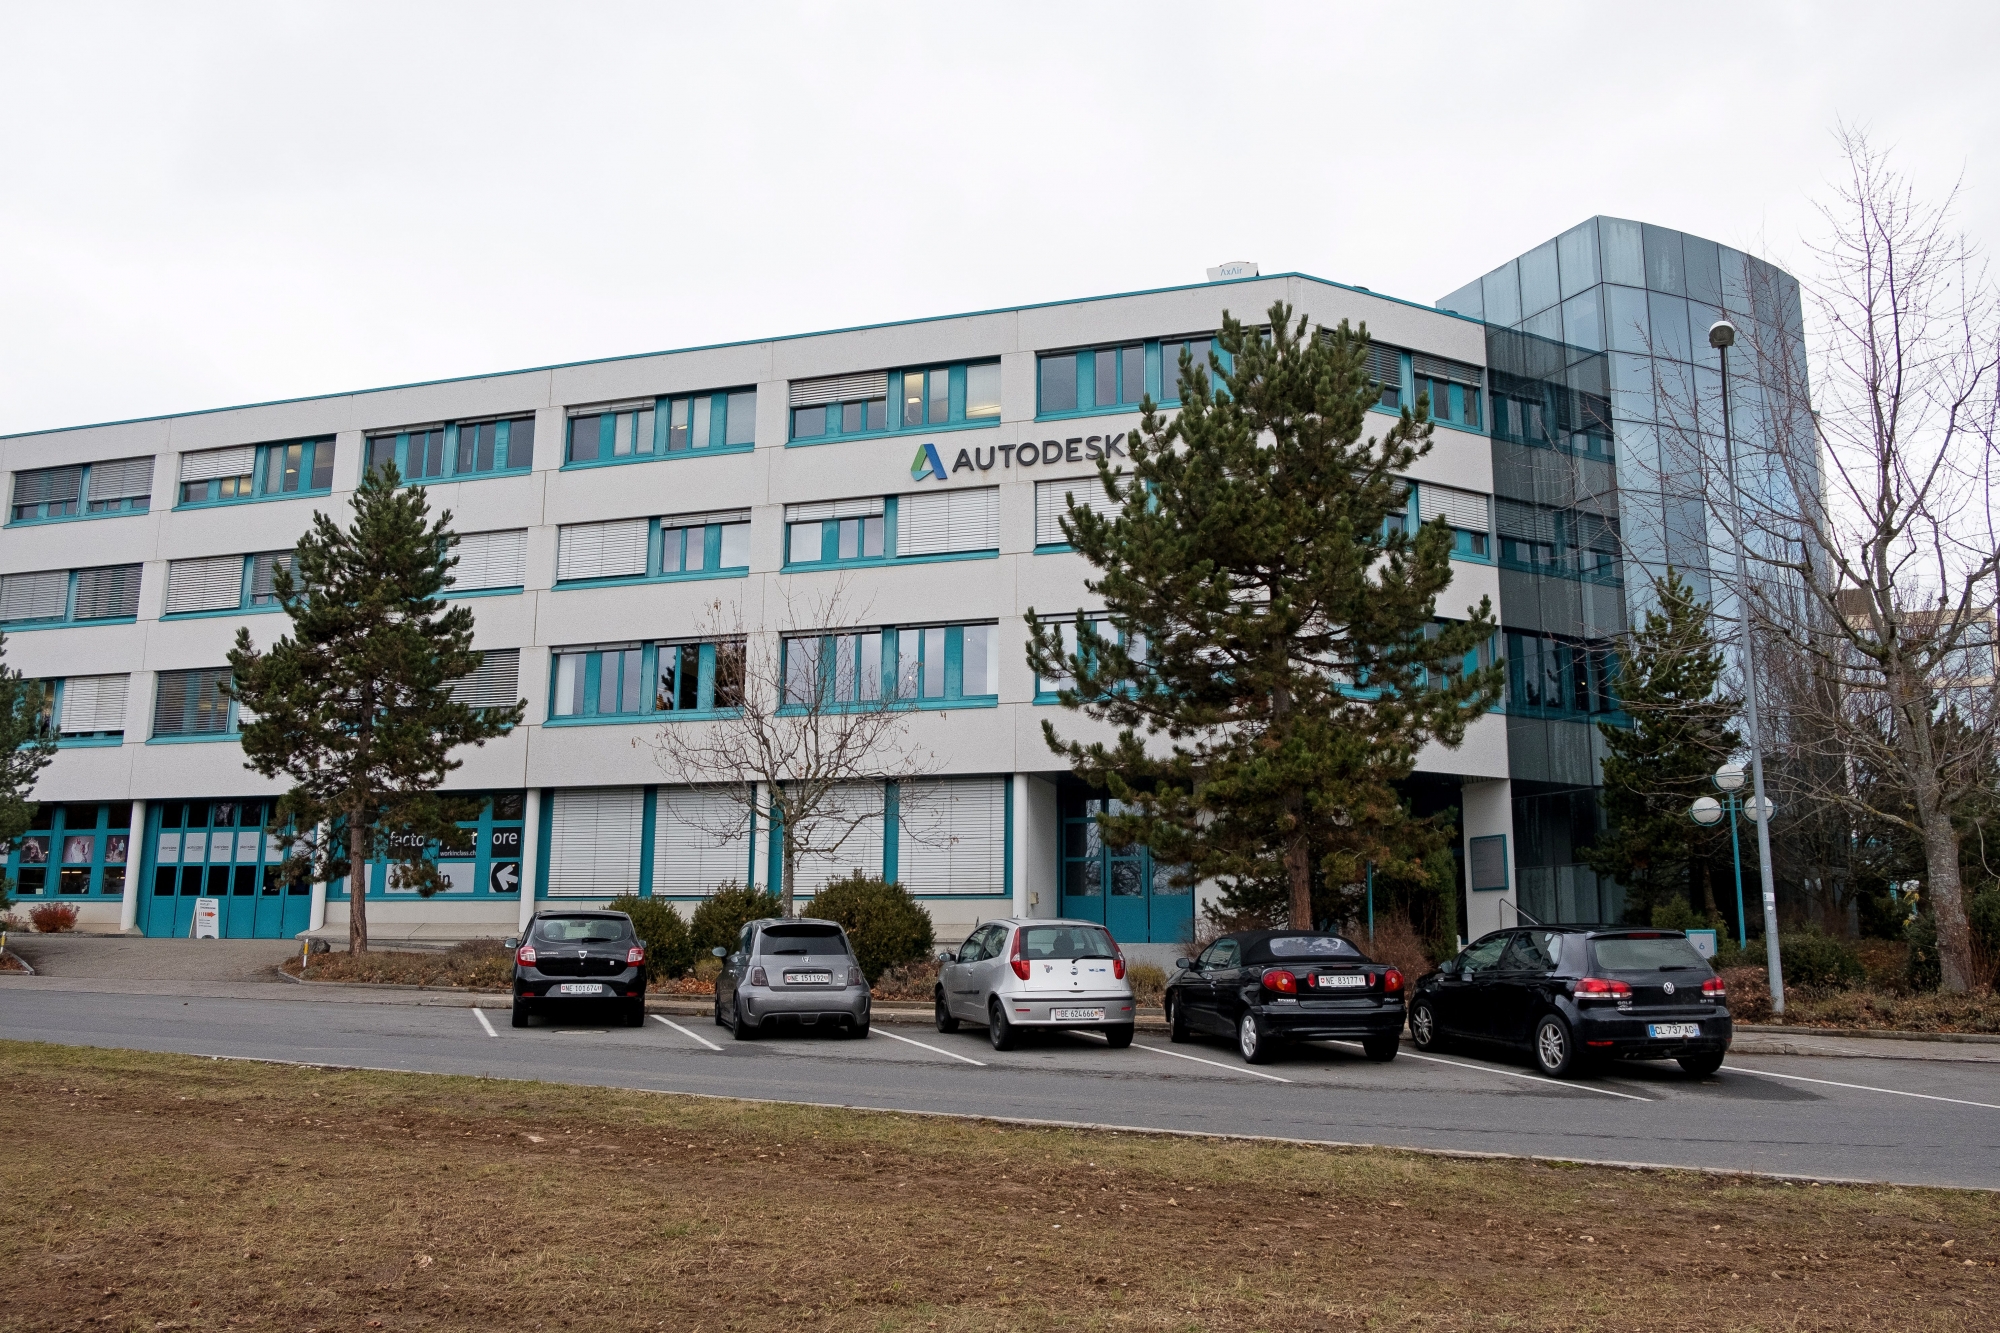 Sur les hauts de Neuchâtel, Syderal va reprendre une partie des locaux laissés vacants par l'entreprise Autodesk.